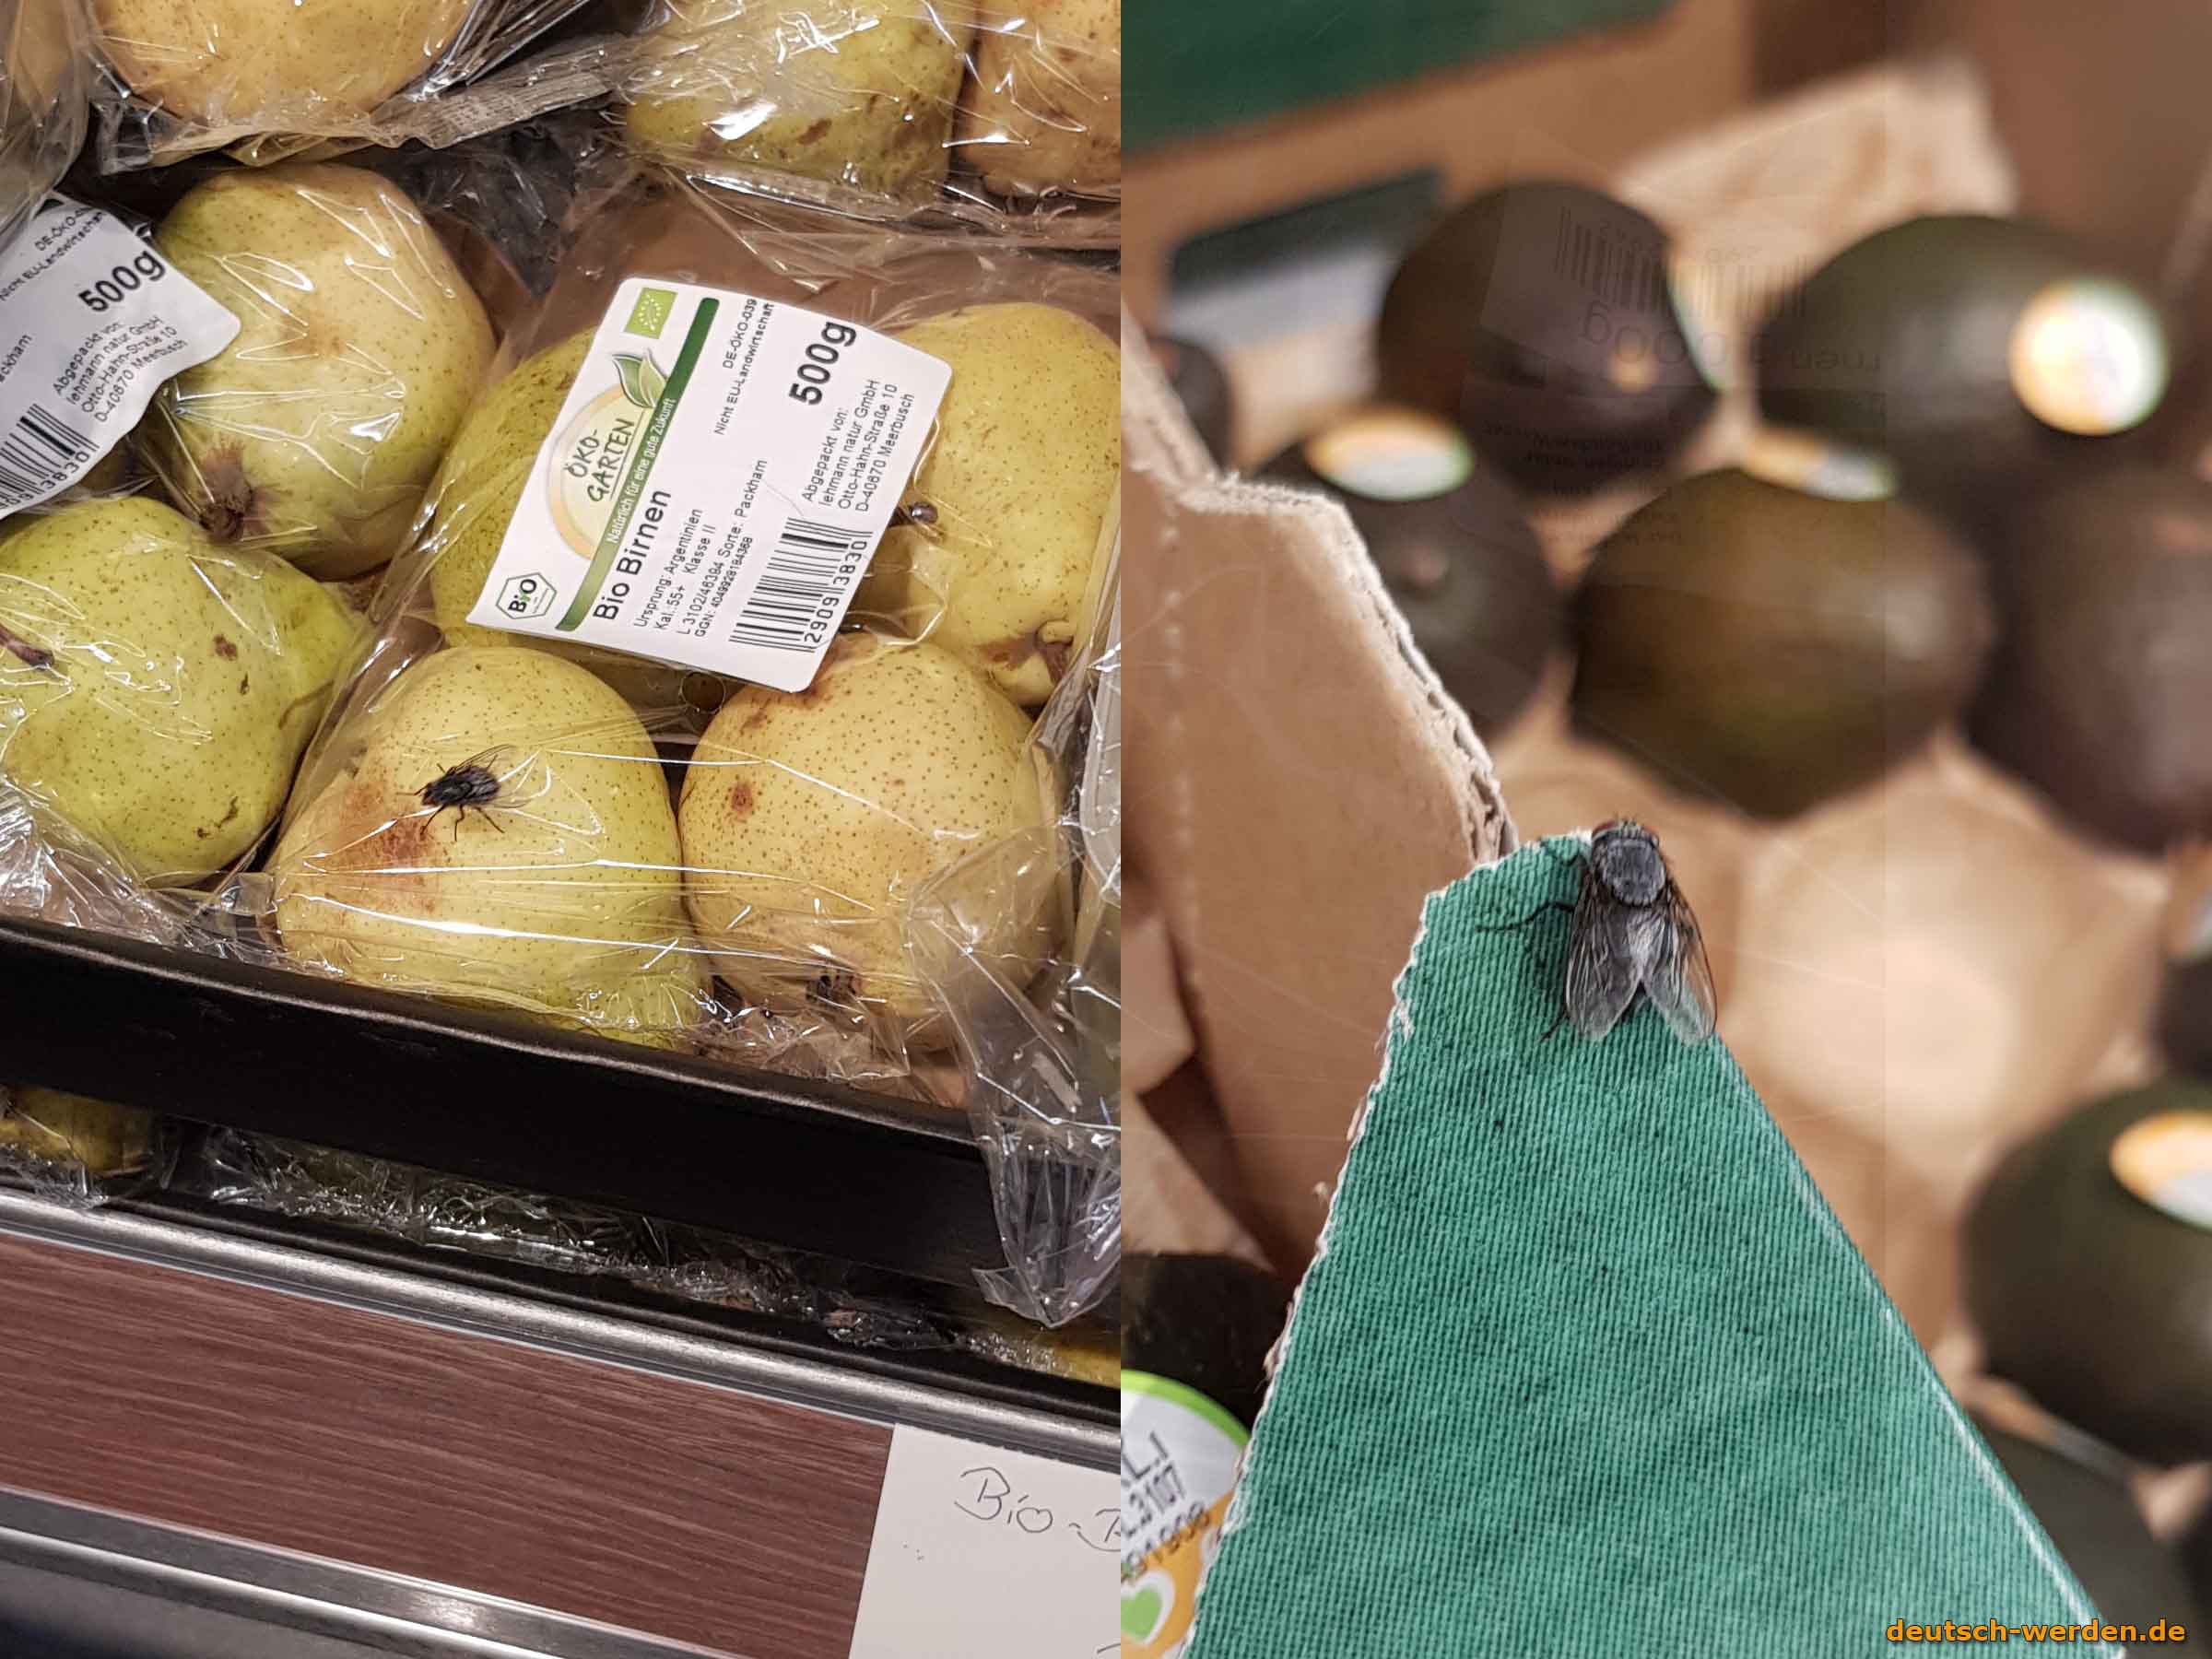 Welches Lebensmittel-Supermarkt ist billiger: Aldi oder Lidl?